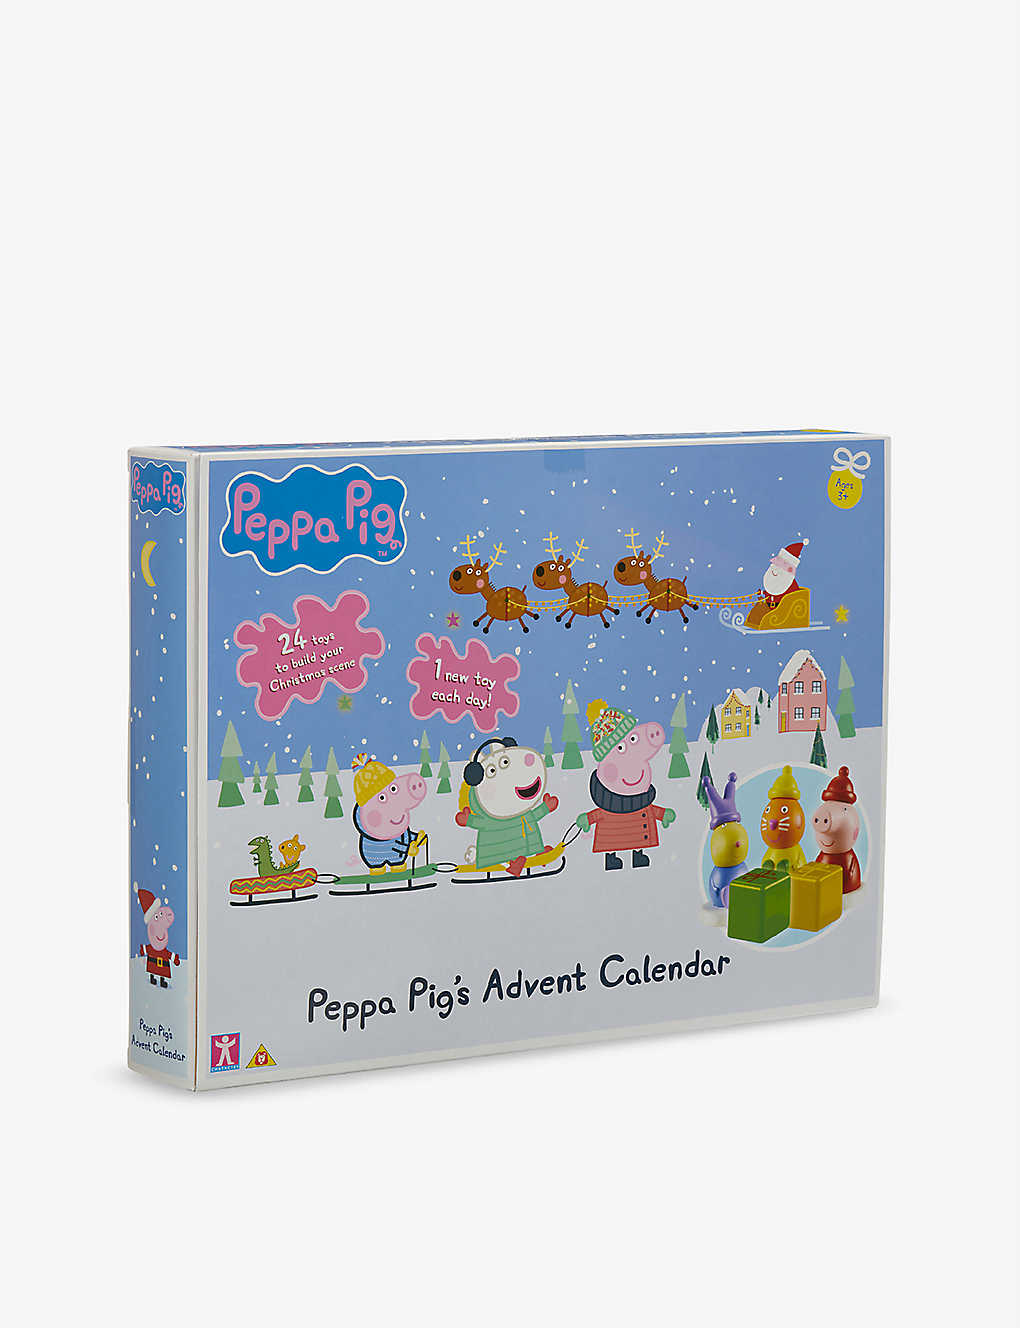 Peppa Pig's Advent Calendar